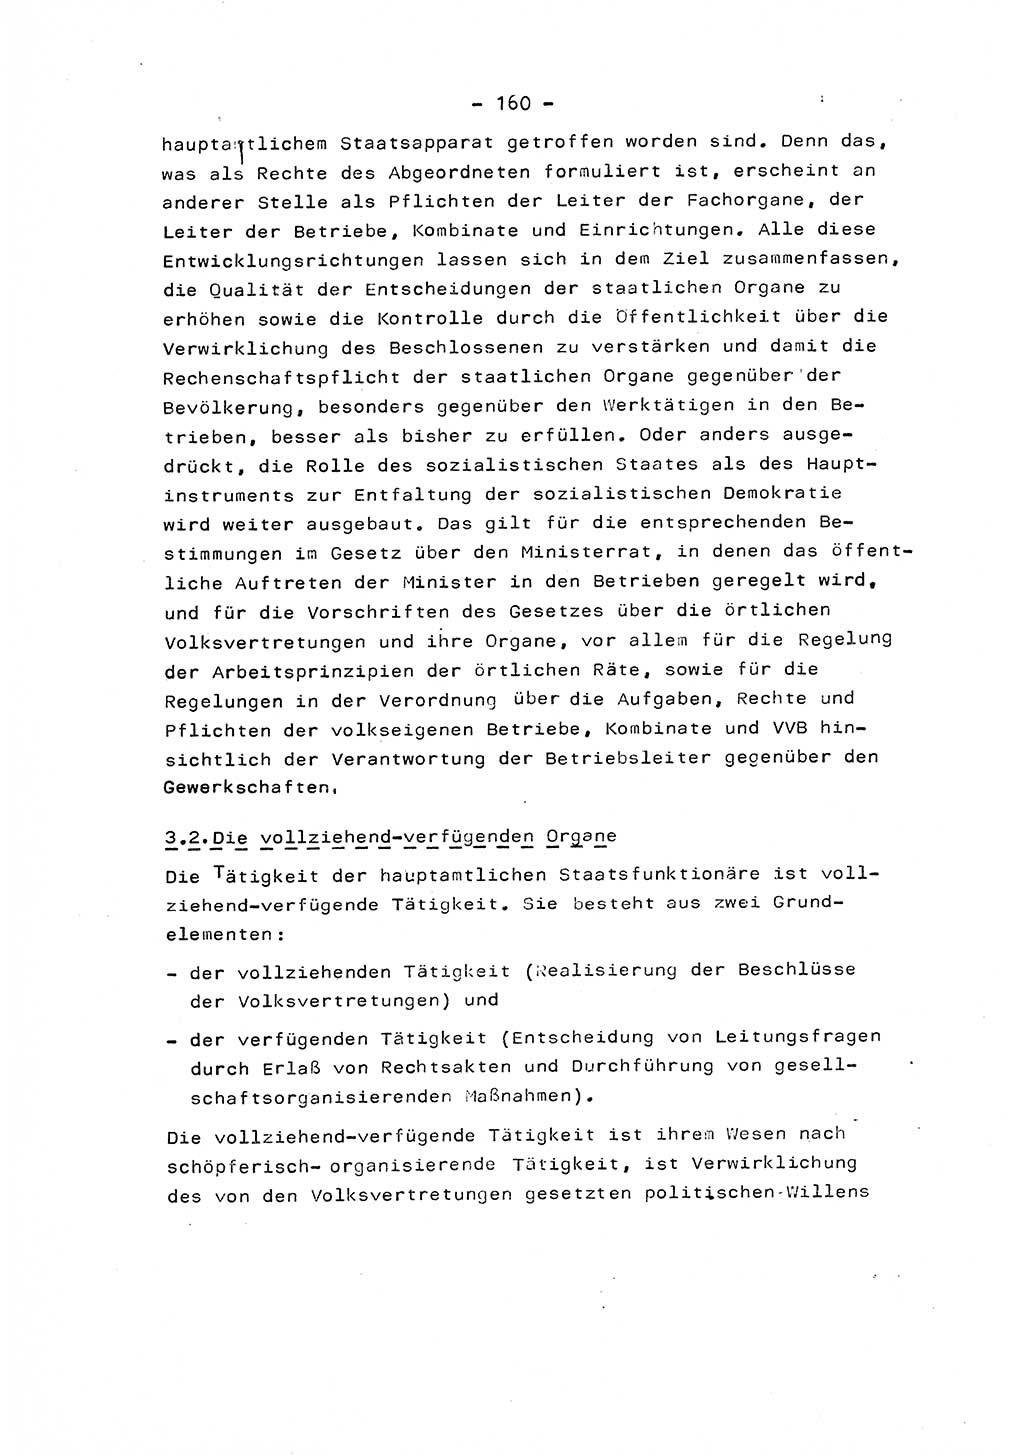 Marxistisch-leninistische Staats- und Rechtstheorie [Deutsche Demokratische Republik (DDR)] 1975, Seite 160 (ML St.-R.-Th. DDR 1975, S. 160)